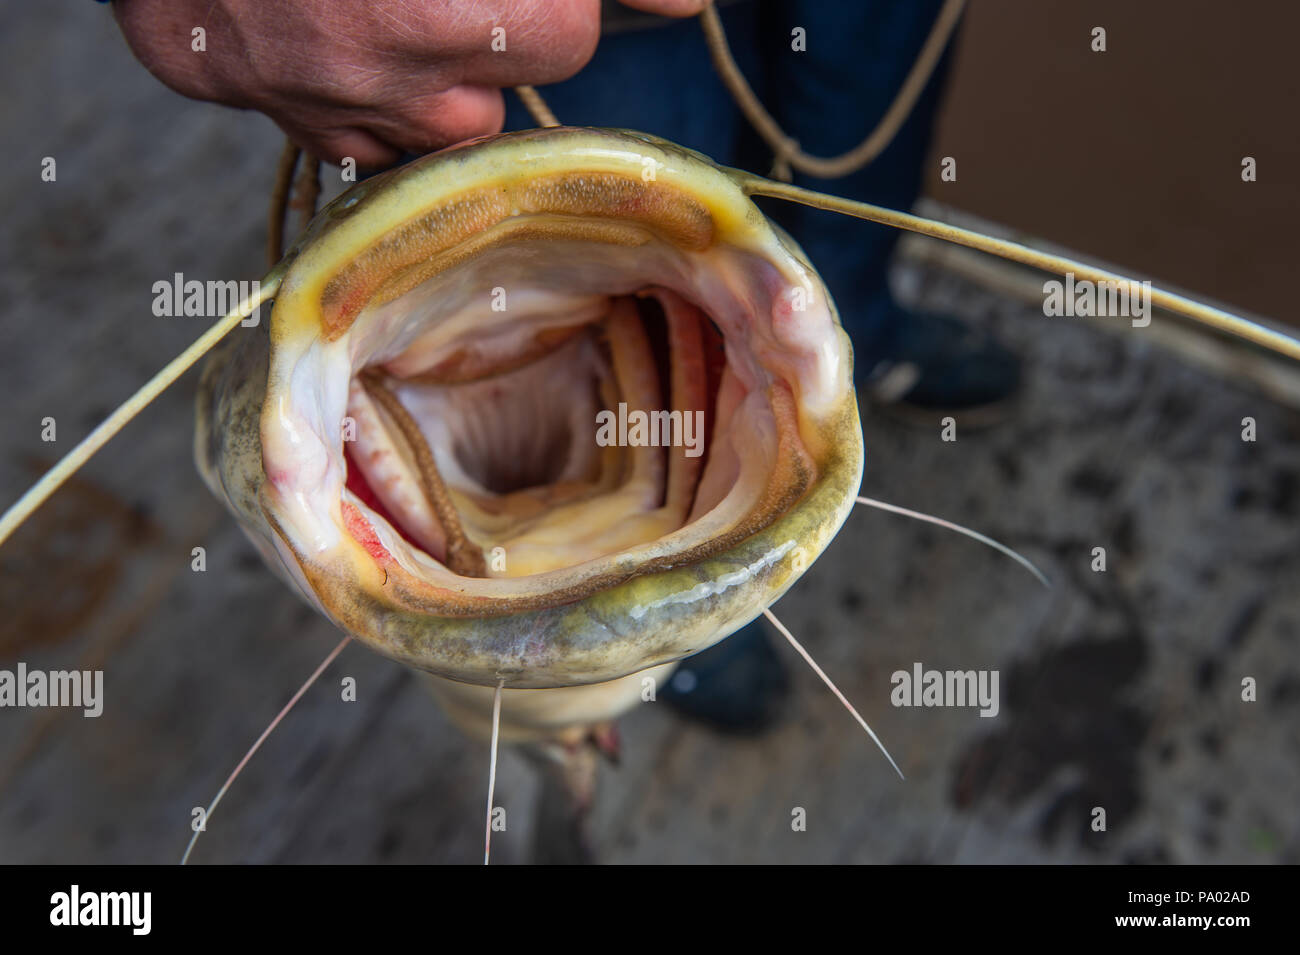 Pesce gatto amur immagini e fotografie stock ad alta risoluzione - Alamy